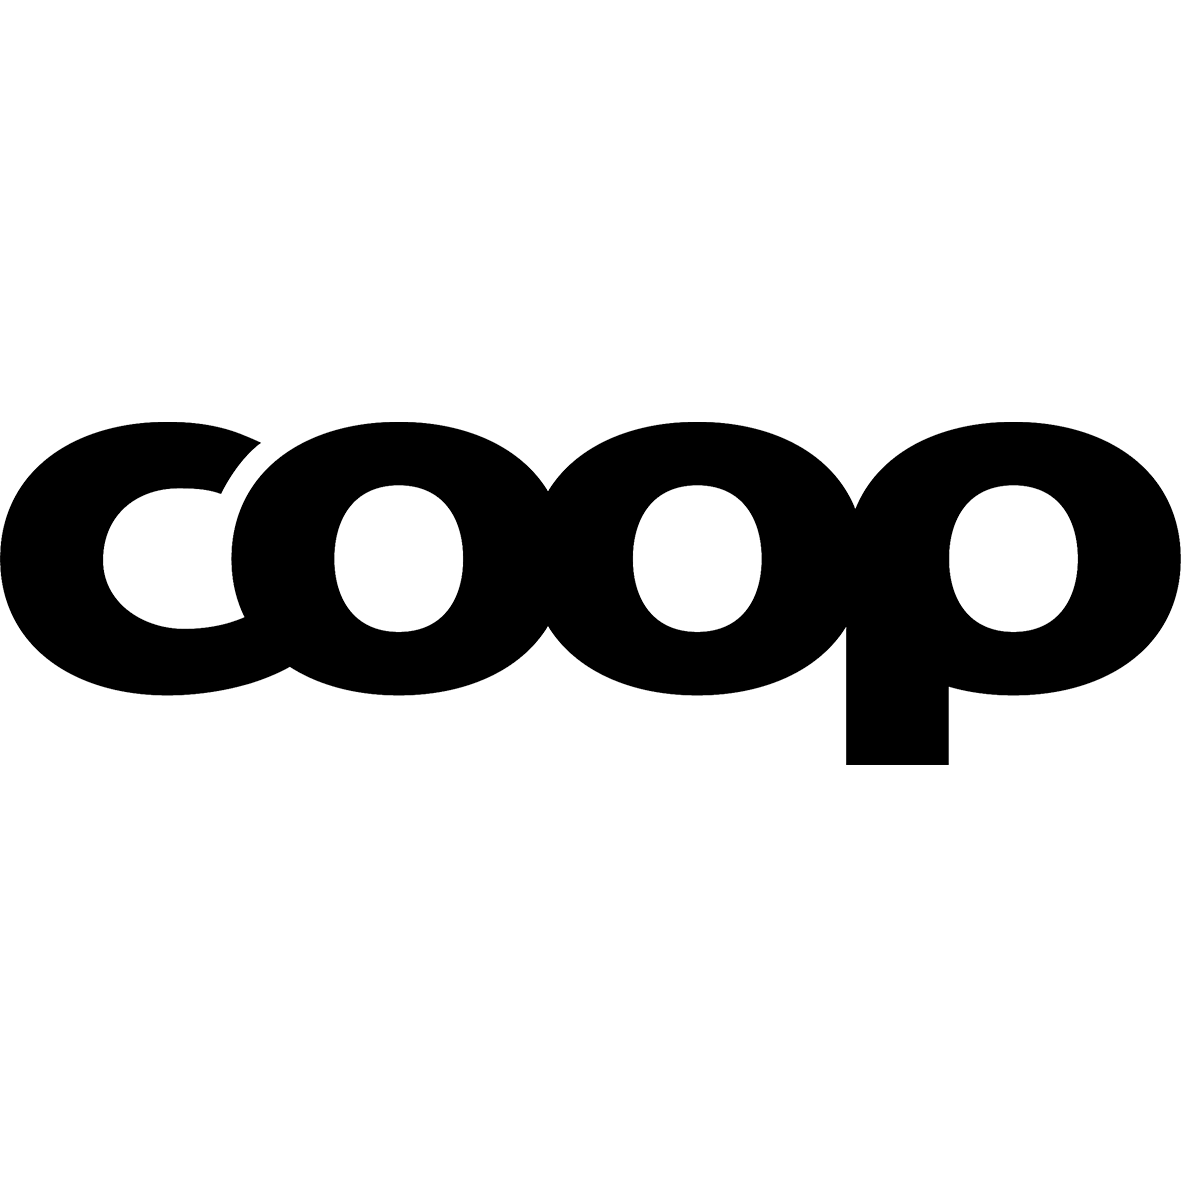 coop_100x100